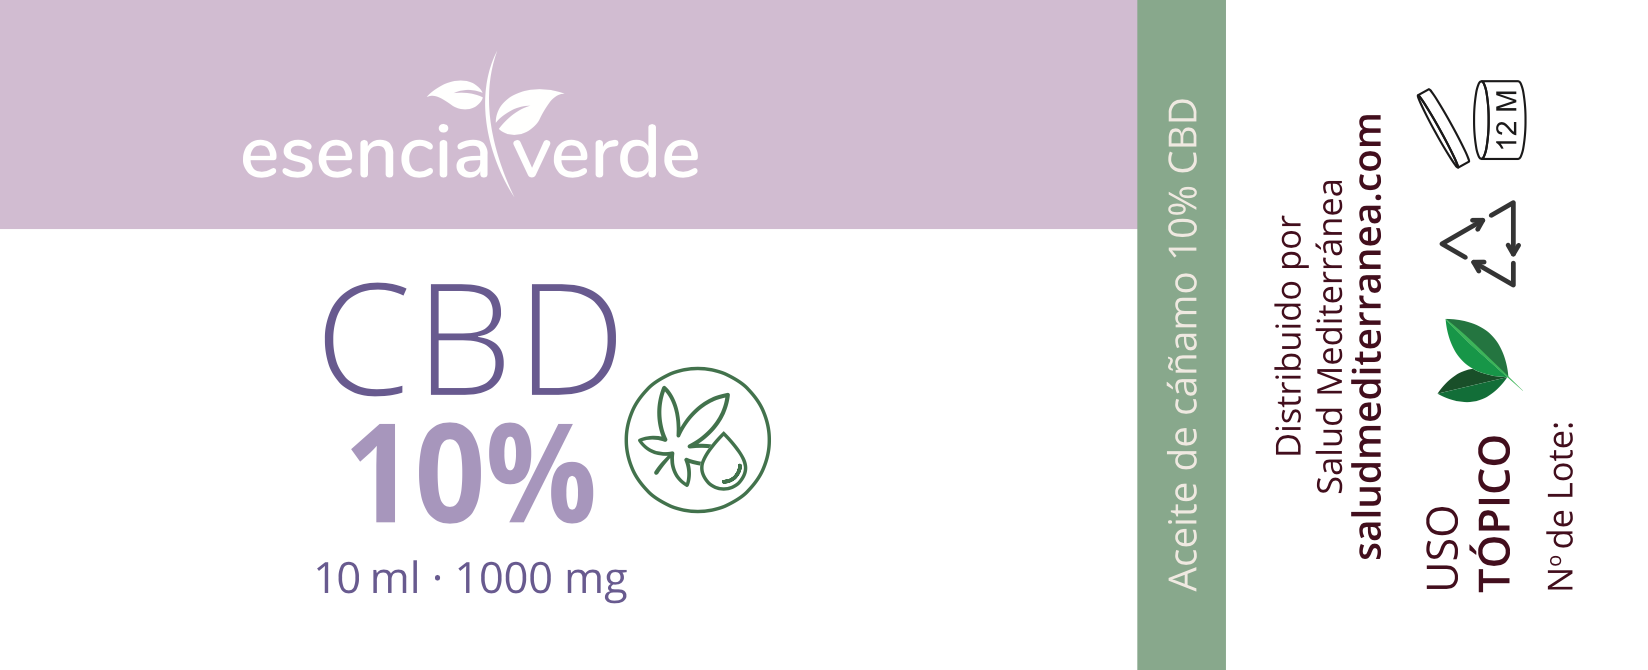 Etiqueta Aceite de CBD 10% - 10 ml. Esencia Verde. Herbolario Salud Mediterranea